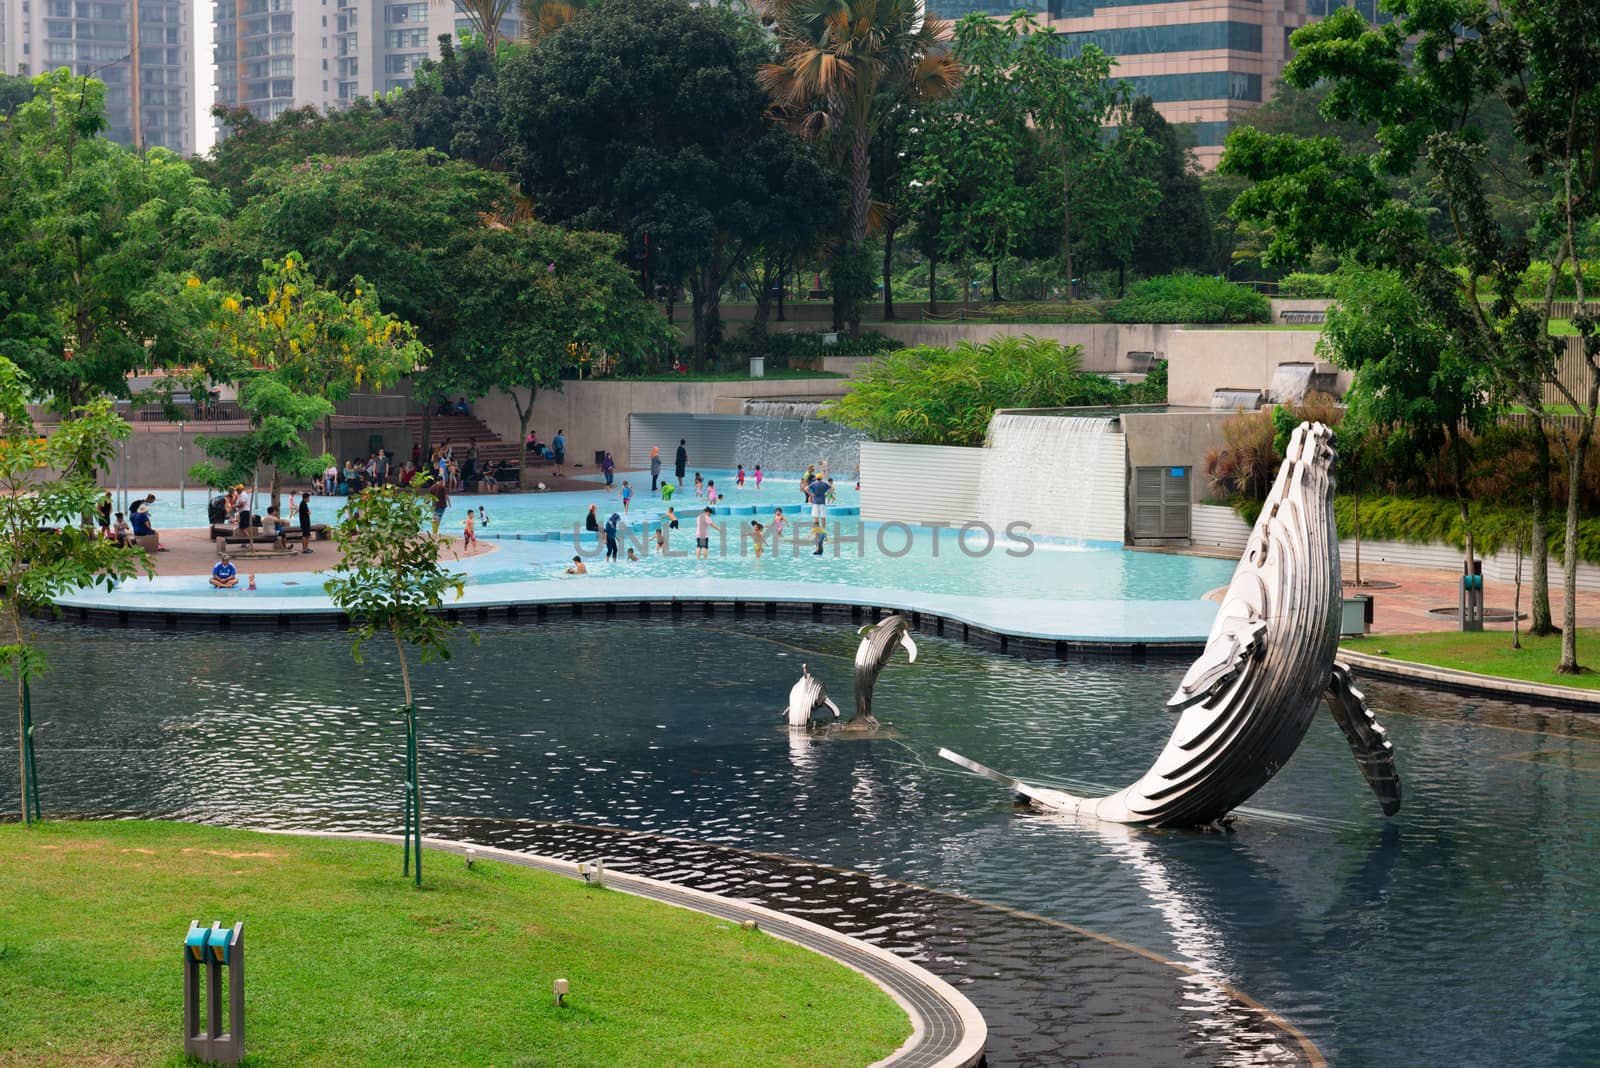 KLCC Park in Kuala Lumpur, Malaysia by iryna_rasko